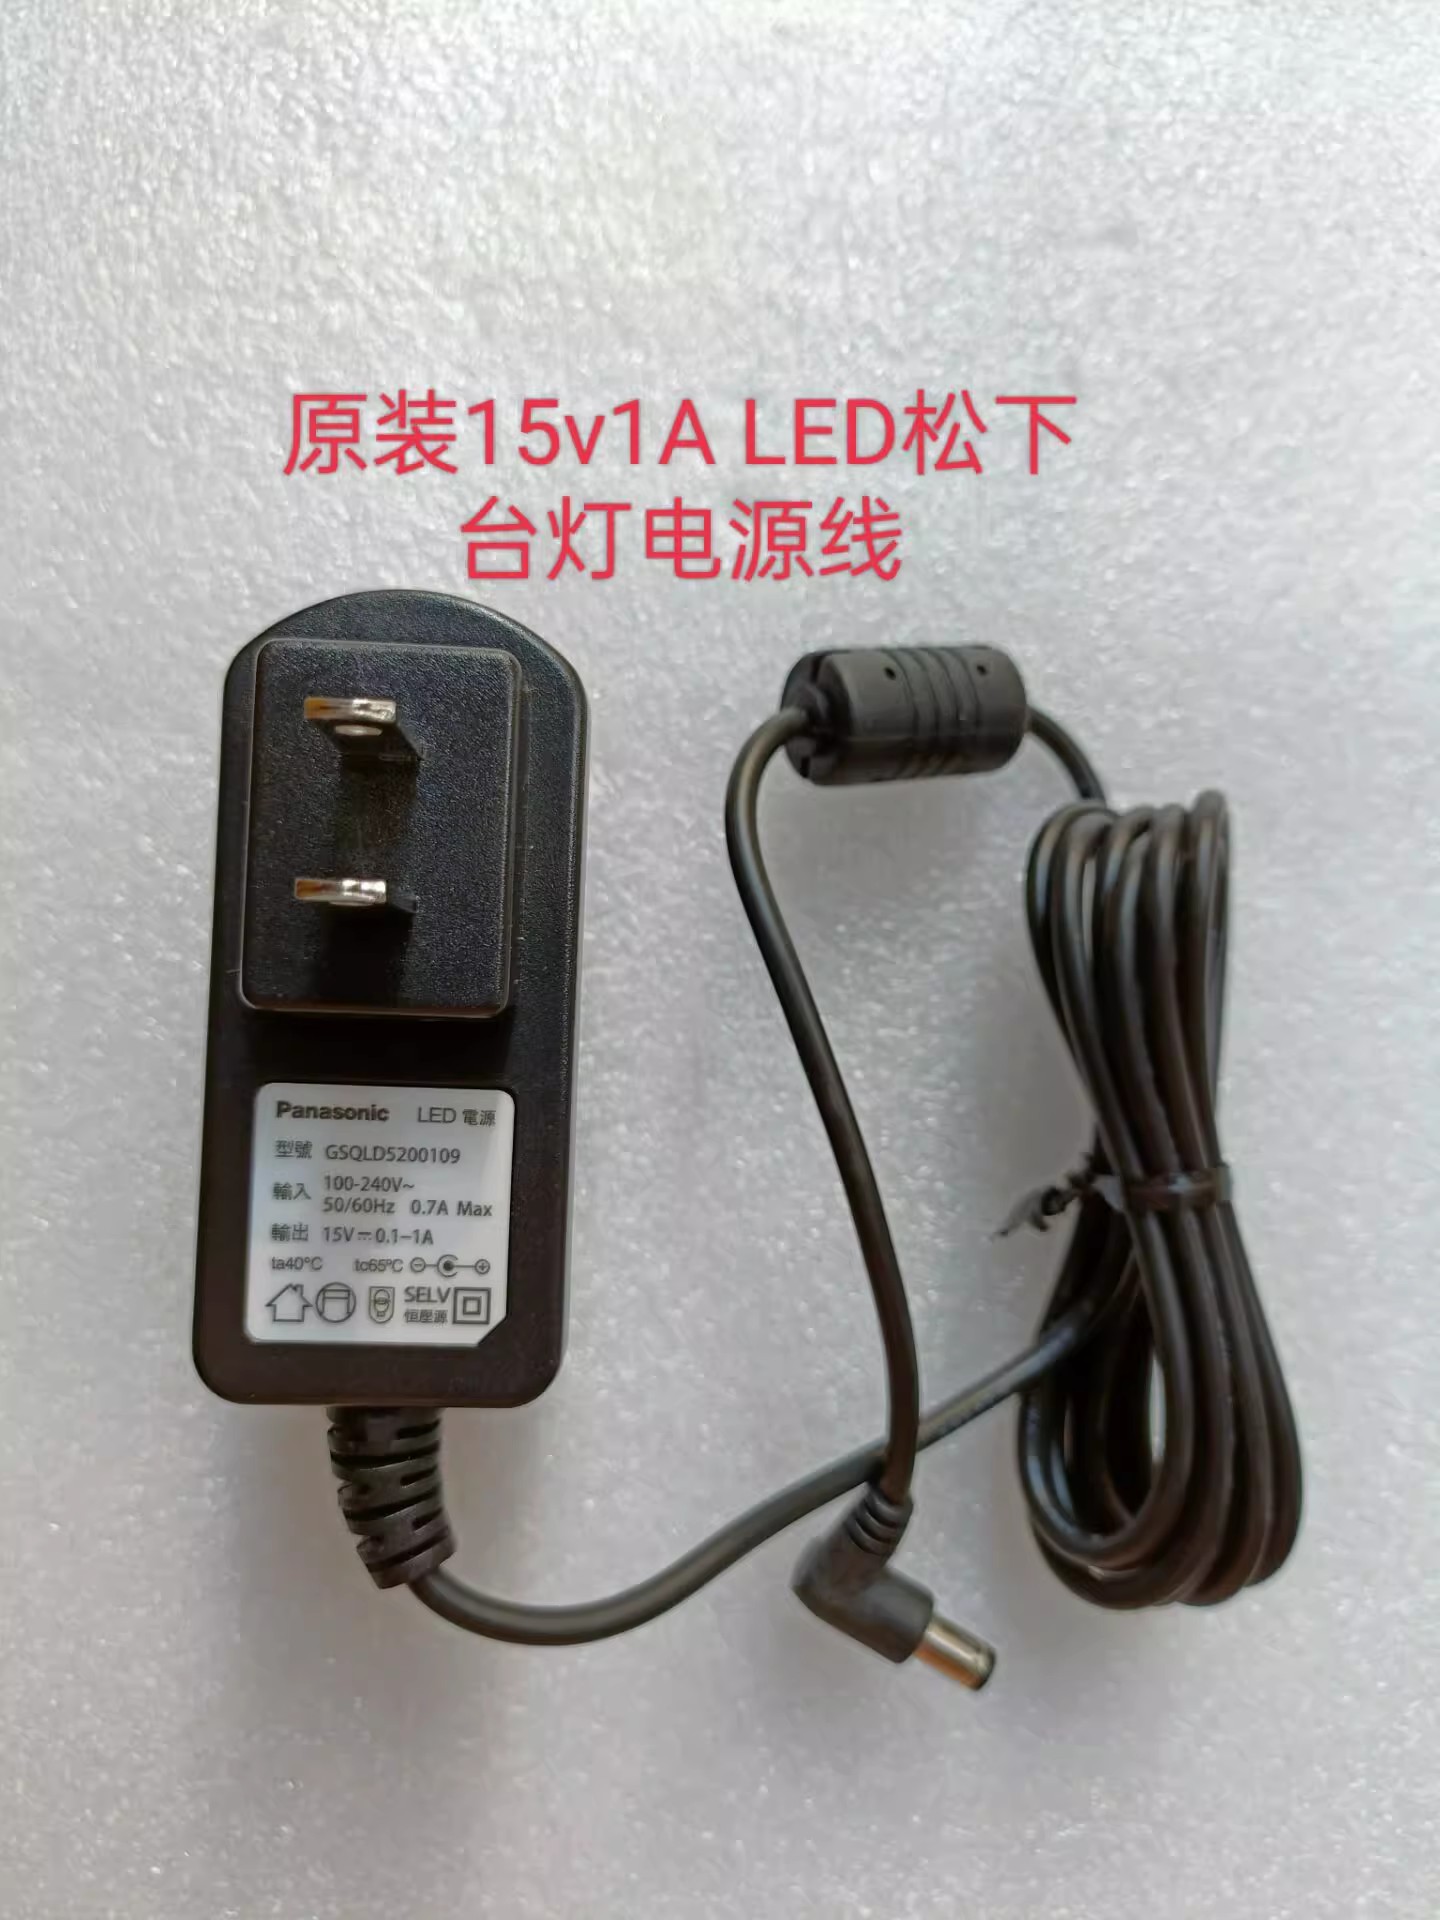 *Brand NEW* panasonic LED SQ-LD600172SQ-LD5200 15V 1A AC DC ADAPTHE POWER Supply